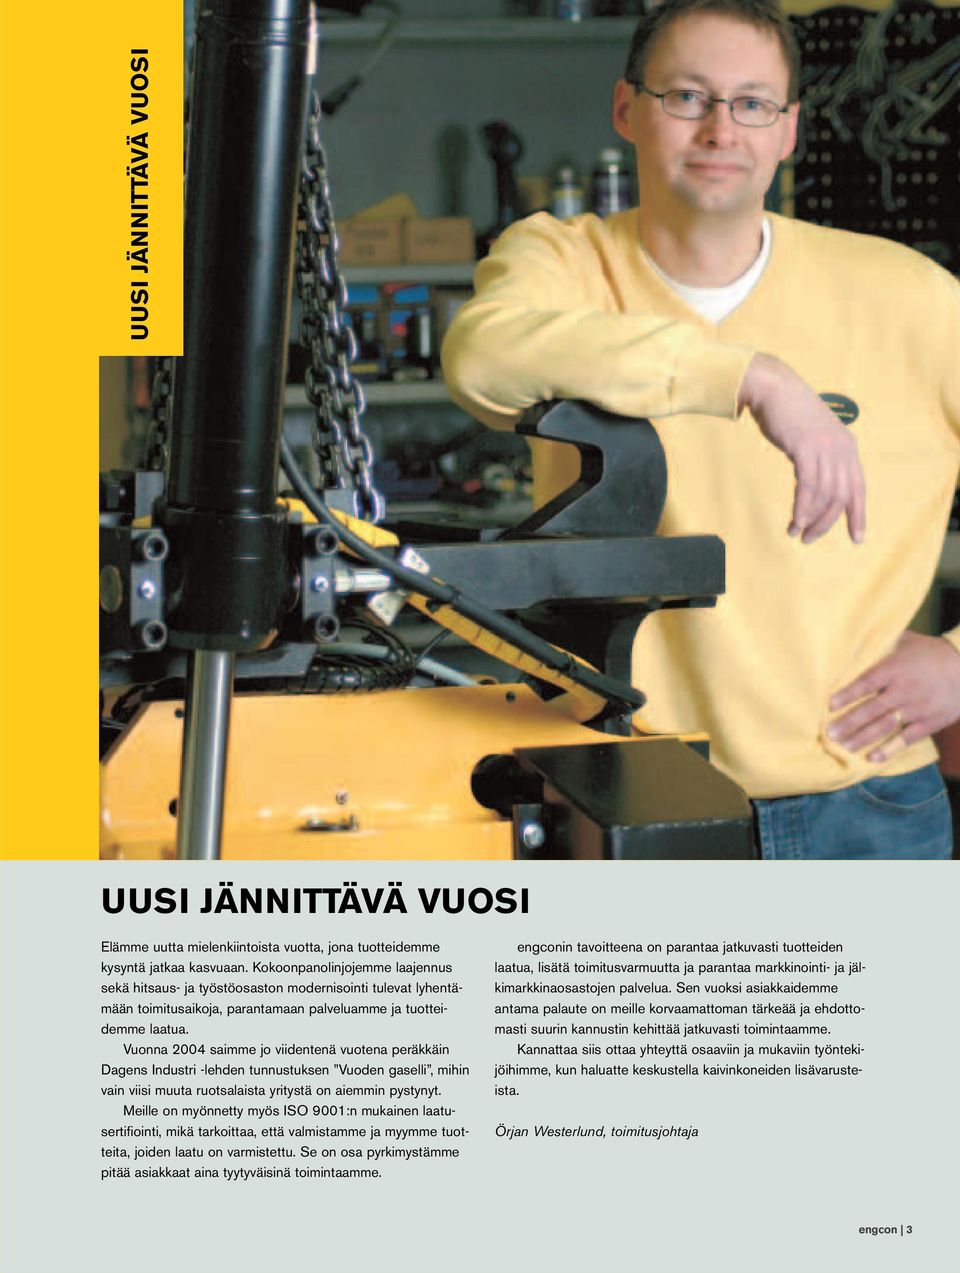 Vuonna 2004 saimme jo viidentenä vuotena peräkkäin Dagens Industri -lehden tunnustuksen Vuoden gaselli, mihin vain viisi muuta ruotsalaista yritystä on aiemmin pystynyt.